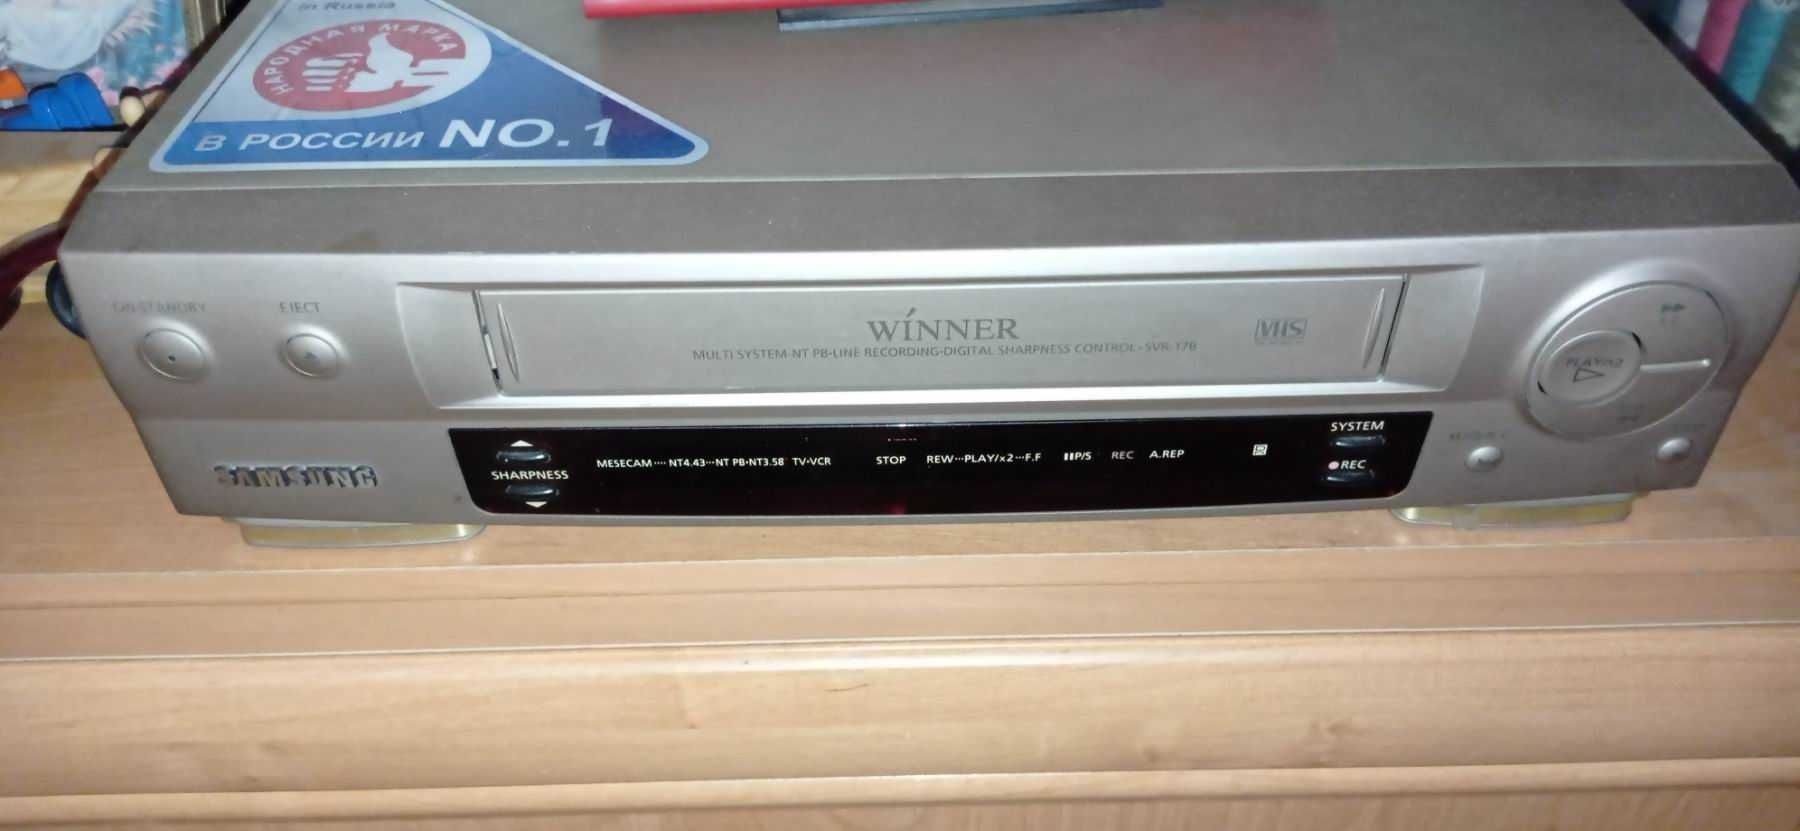 Відеоплеєр Winner Samsung VHS SVR 17В, в хорошому робочому стані